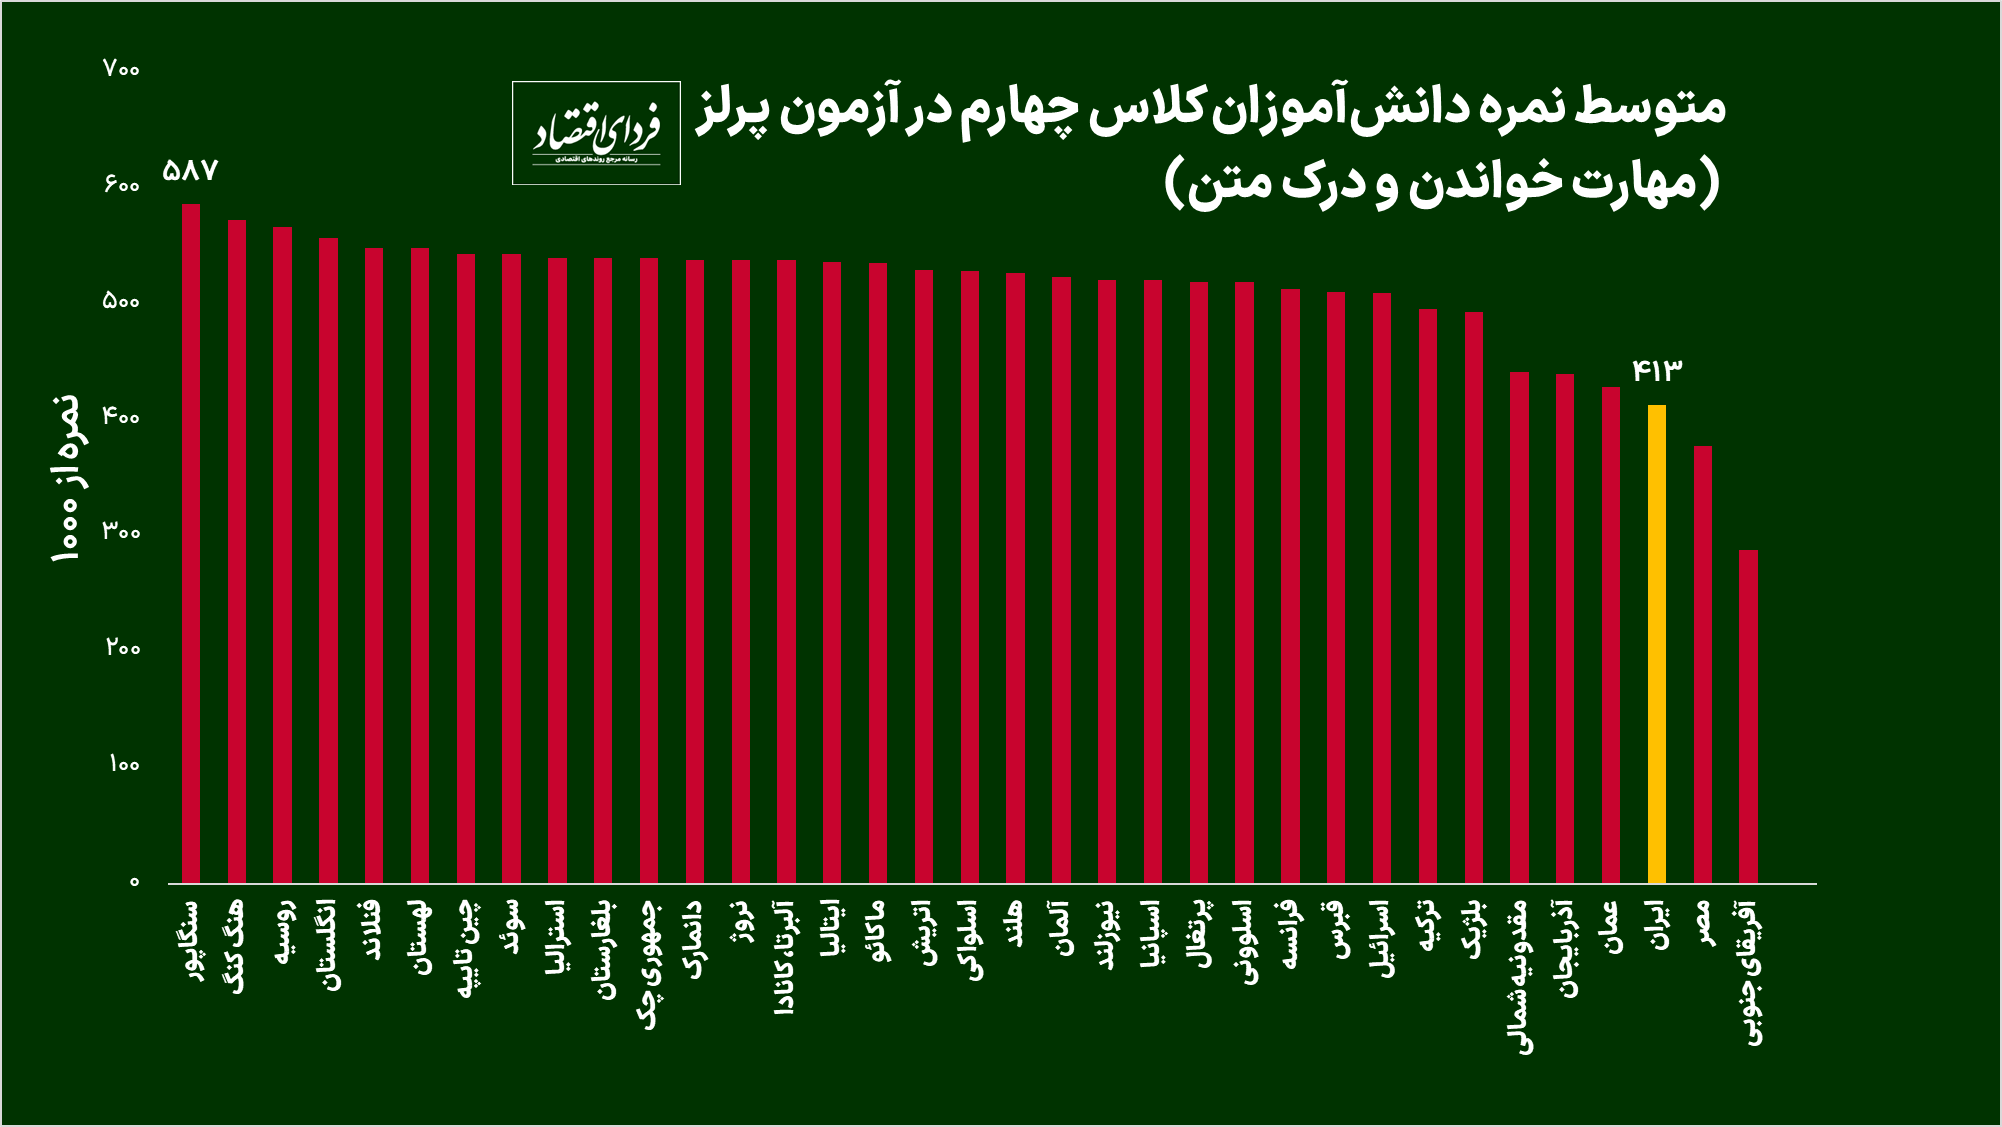 آموزش عمومی در ایران چقدر از جهان عقب است؟